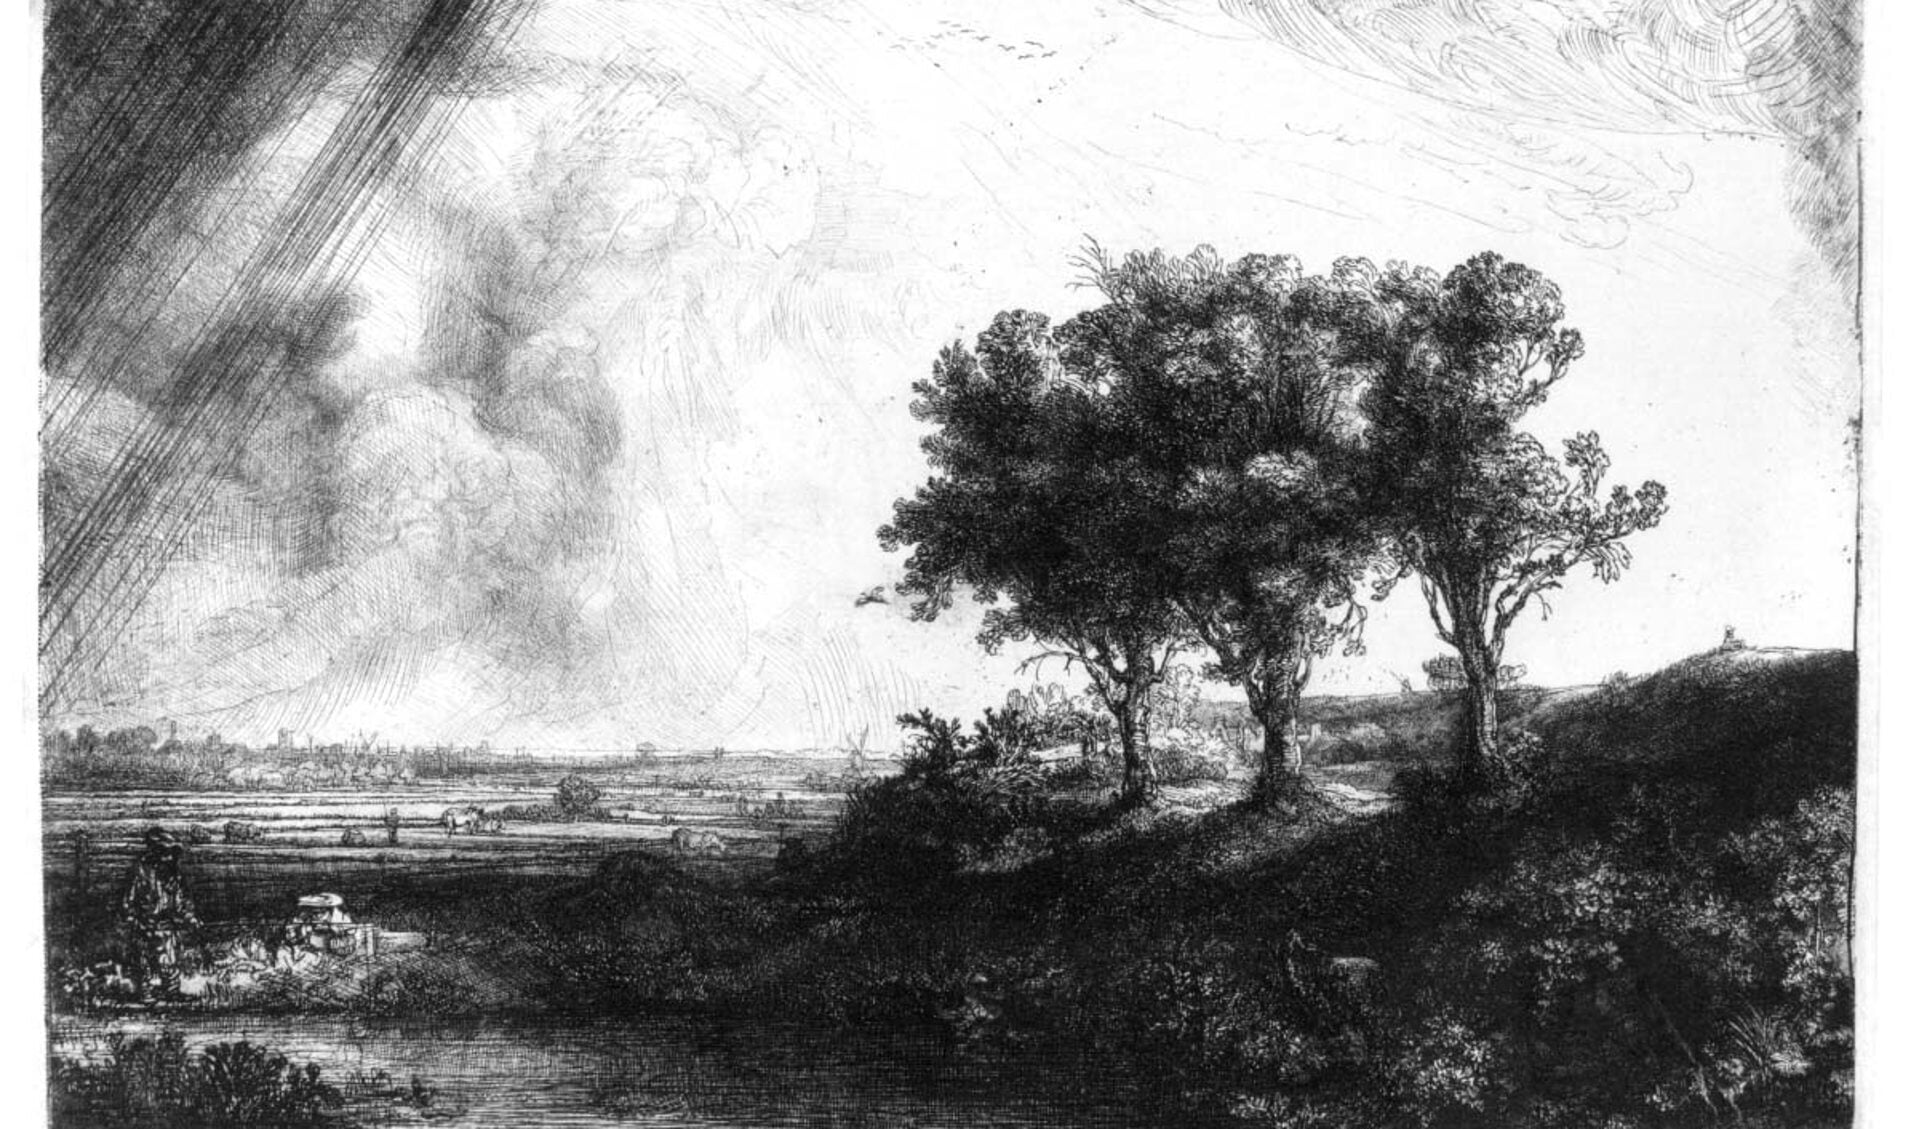 'De drie bomen' van Rembrandt van Rijn.